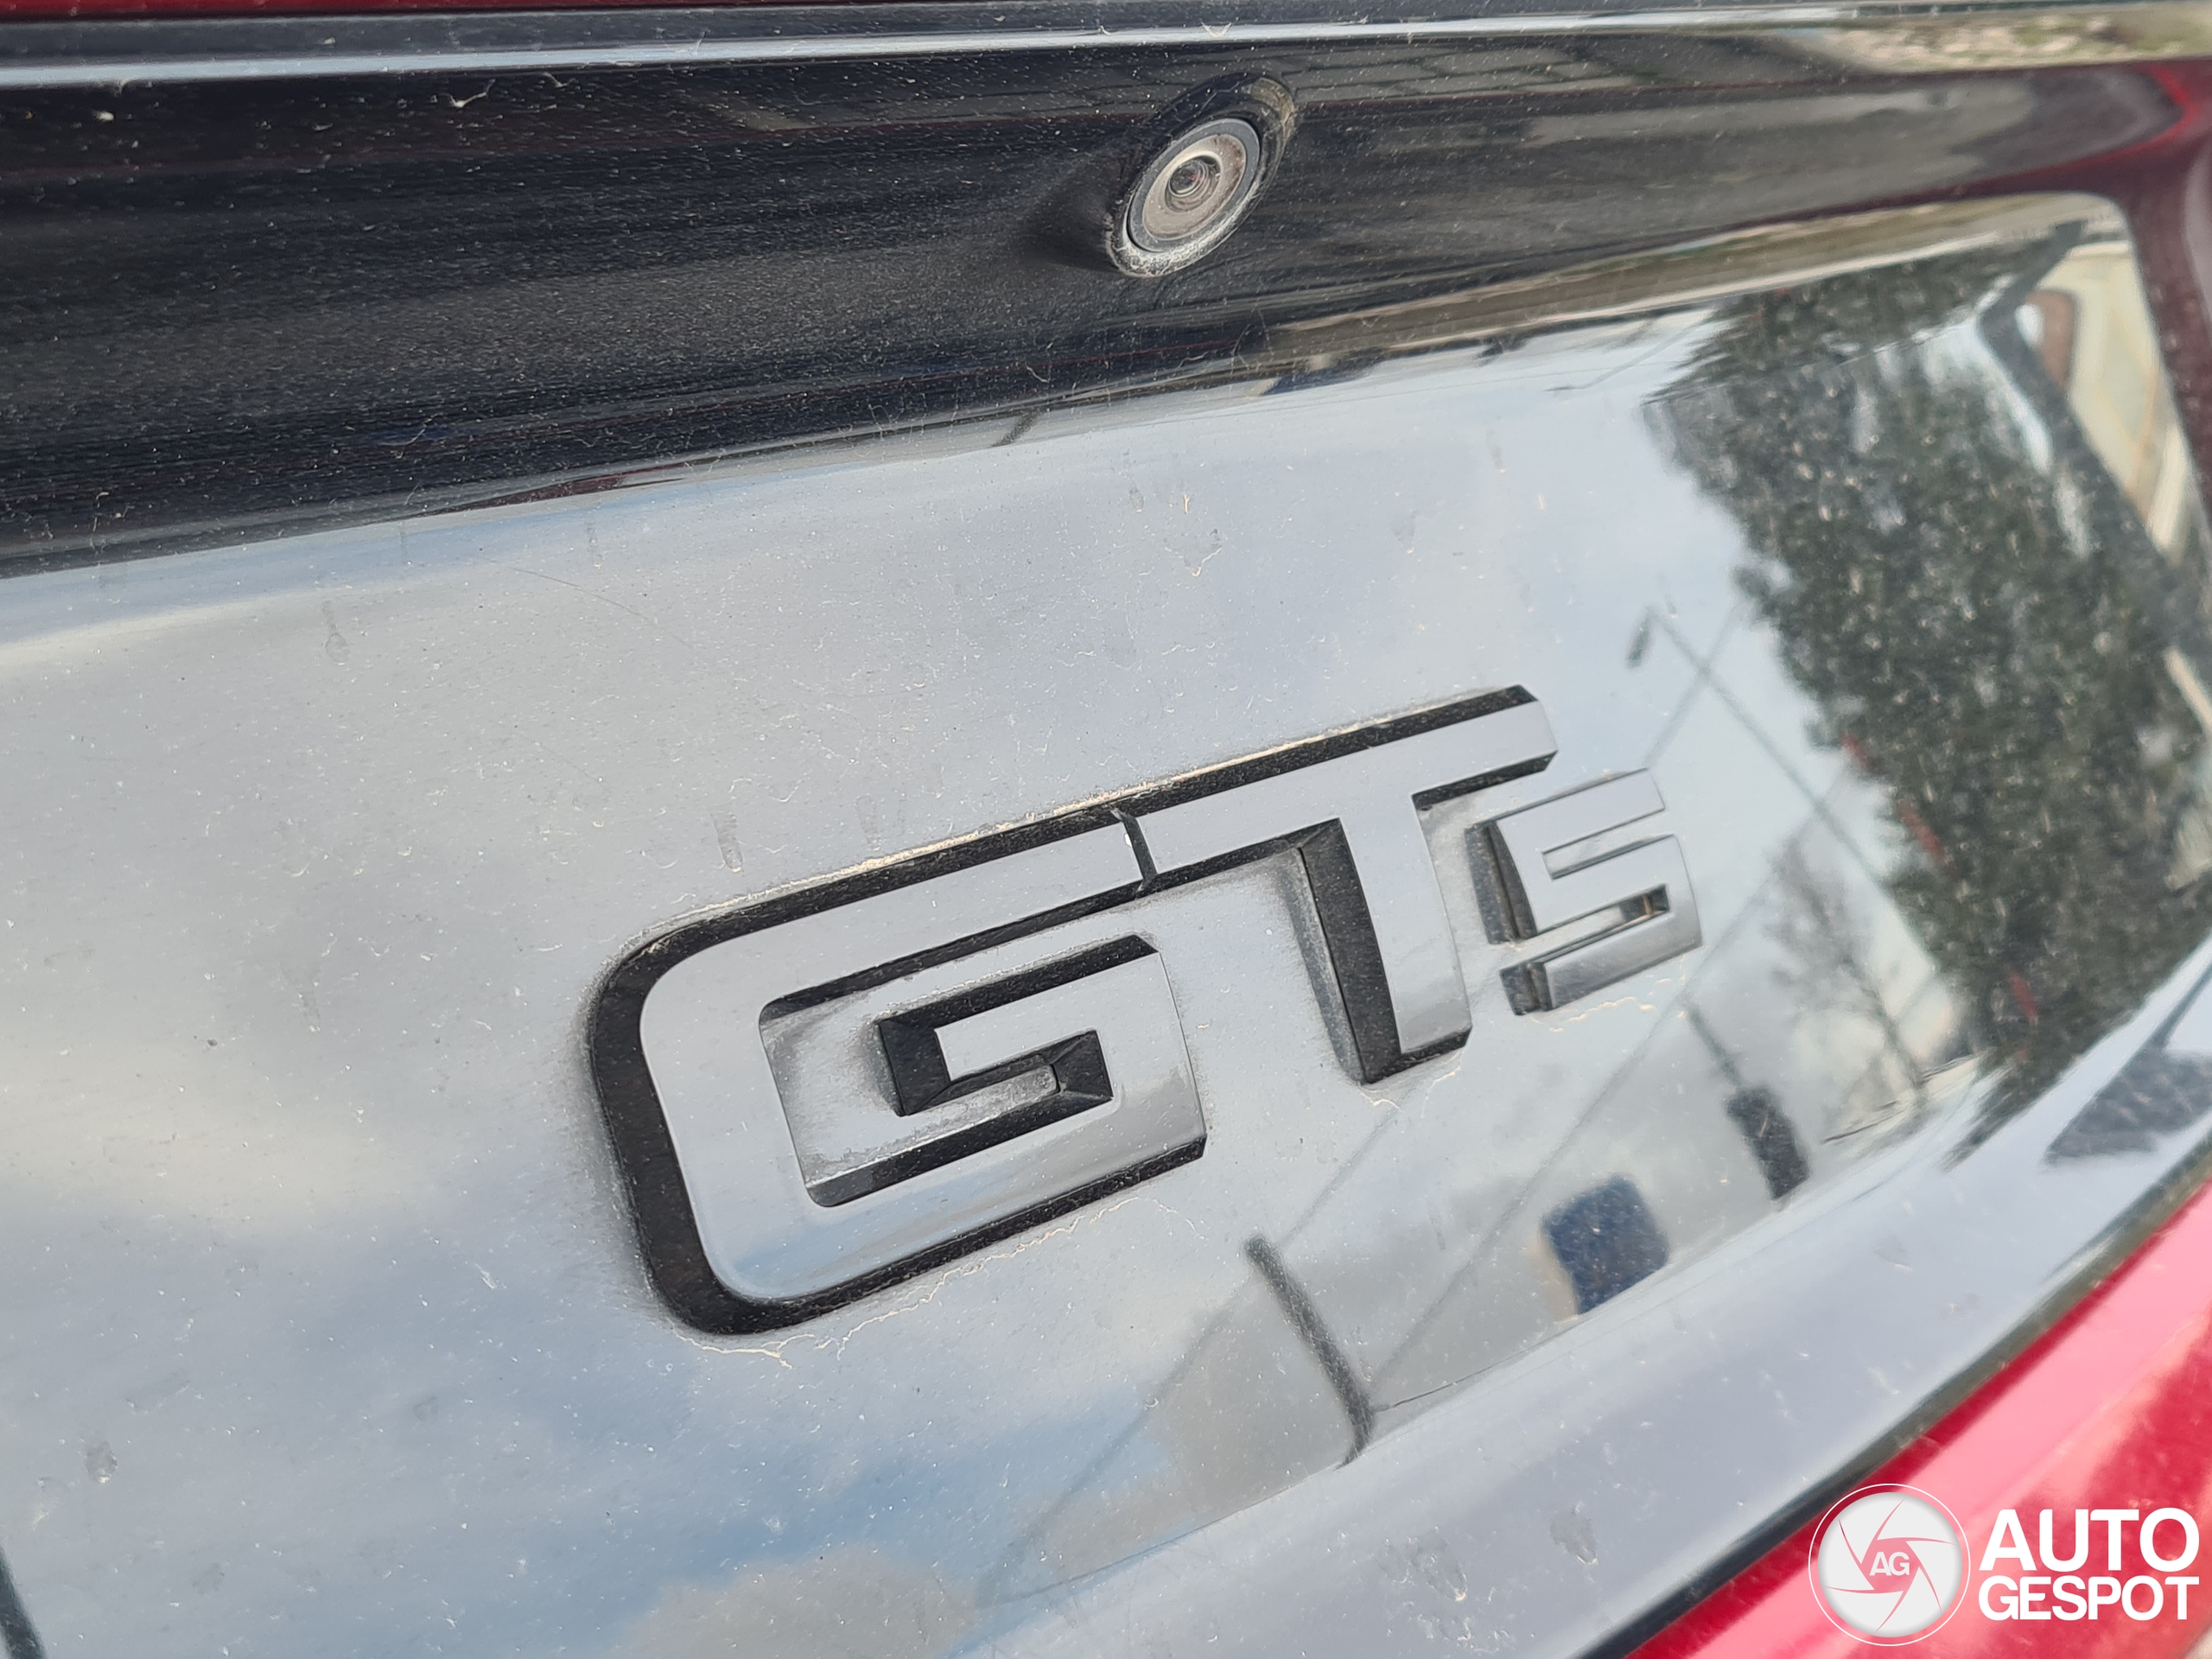 Ford Mustang GTS 2015 Carrozzeria Tedesco